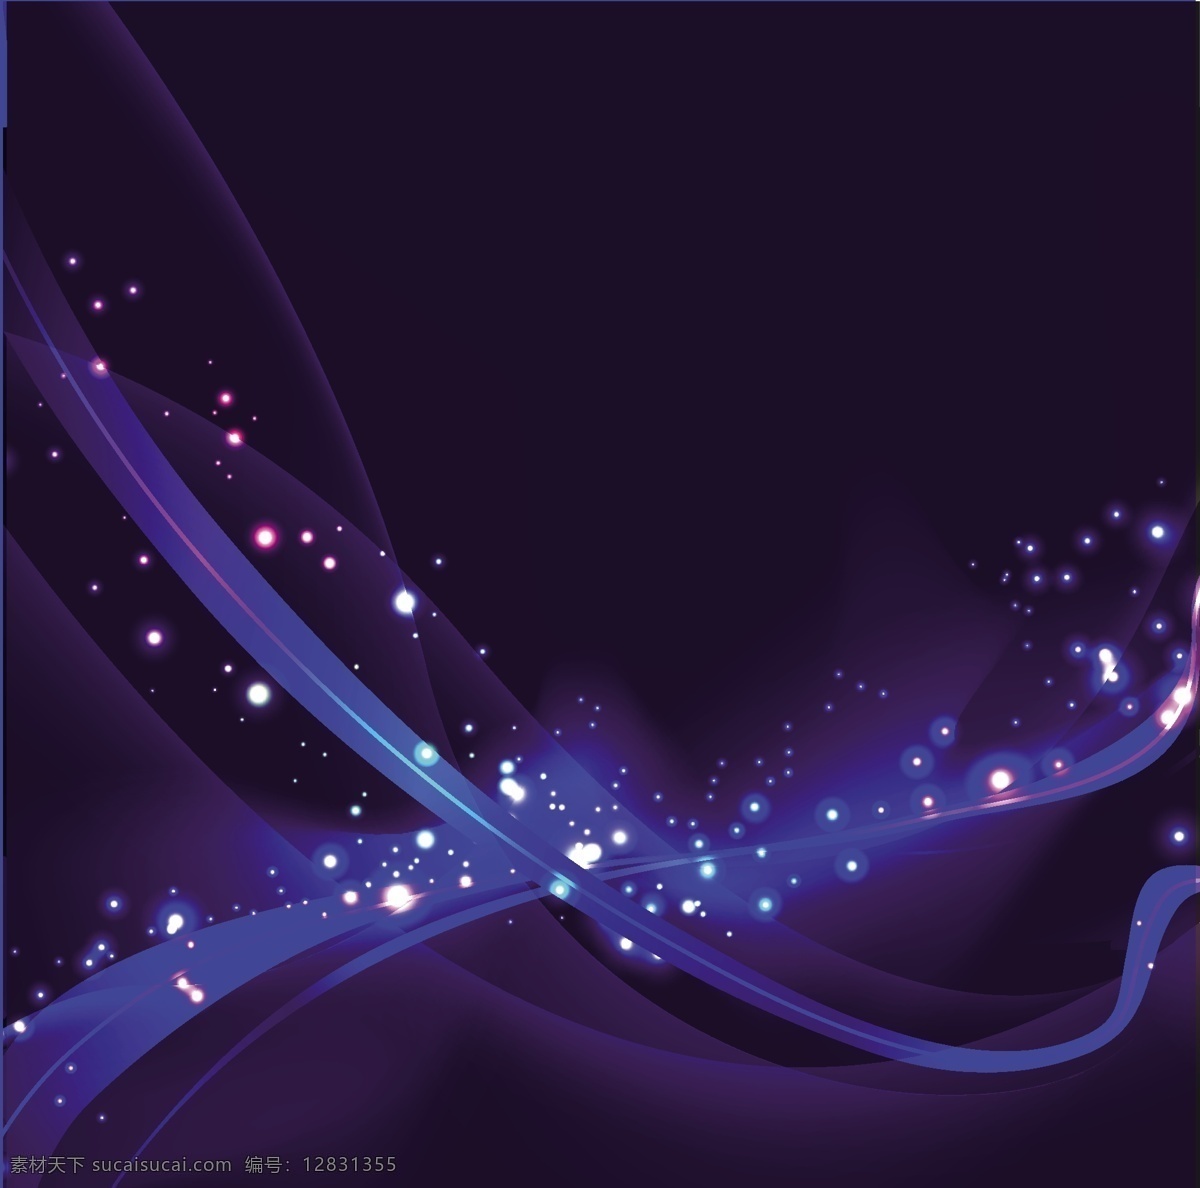 深蓝色 梦幻 矢量 背景 web 插画 创意 灯 黑暗 幻想 空间 免费 病 媒 生物 时尚 独特的 原始的 高质量 图形 质量 新鲜的 设计蓝色的 深 发光的 辉光 摘要 波 星星 psd源文件